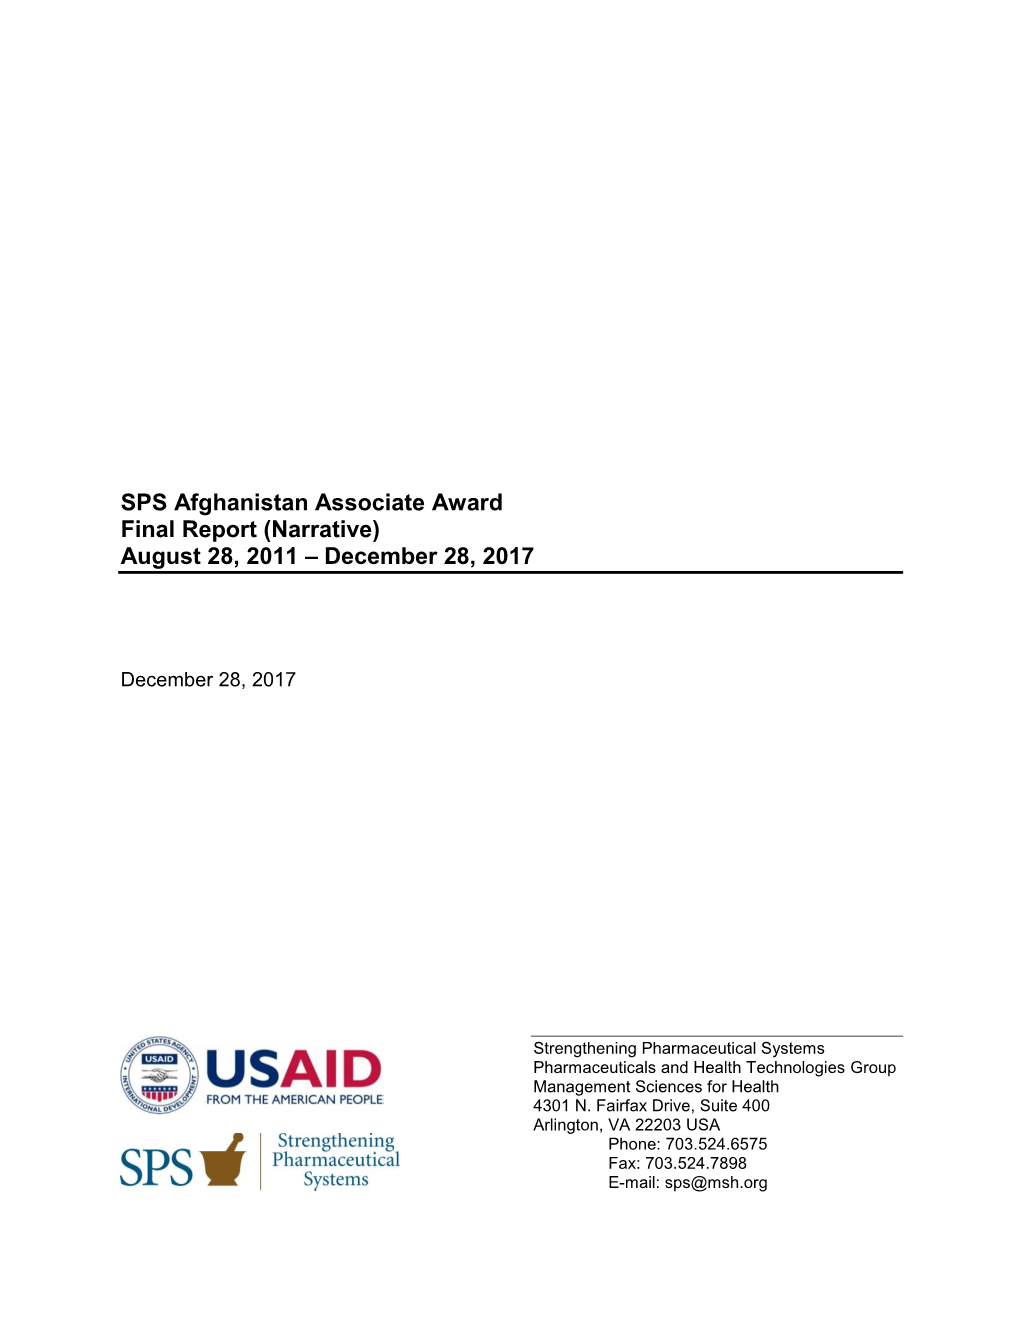 SPS Afghanistan Associate Award Final Report (Narrative) August 28, 2011 – December 28, 2017